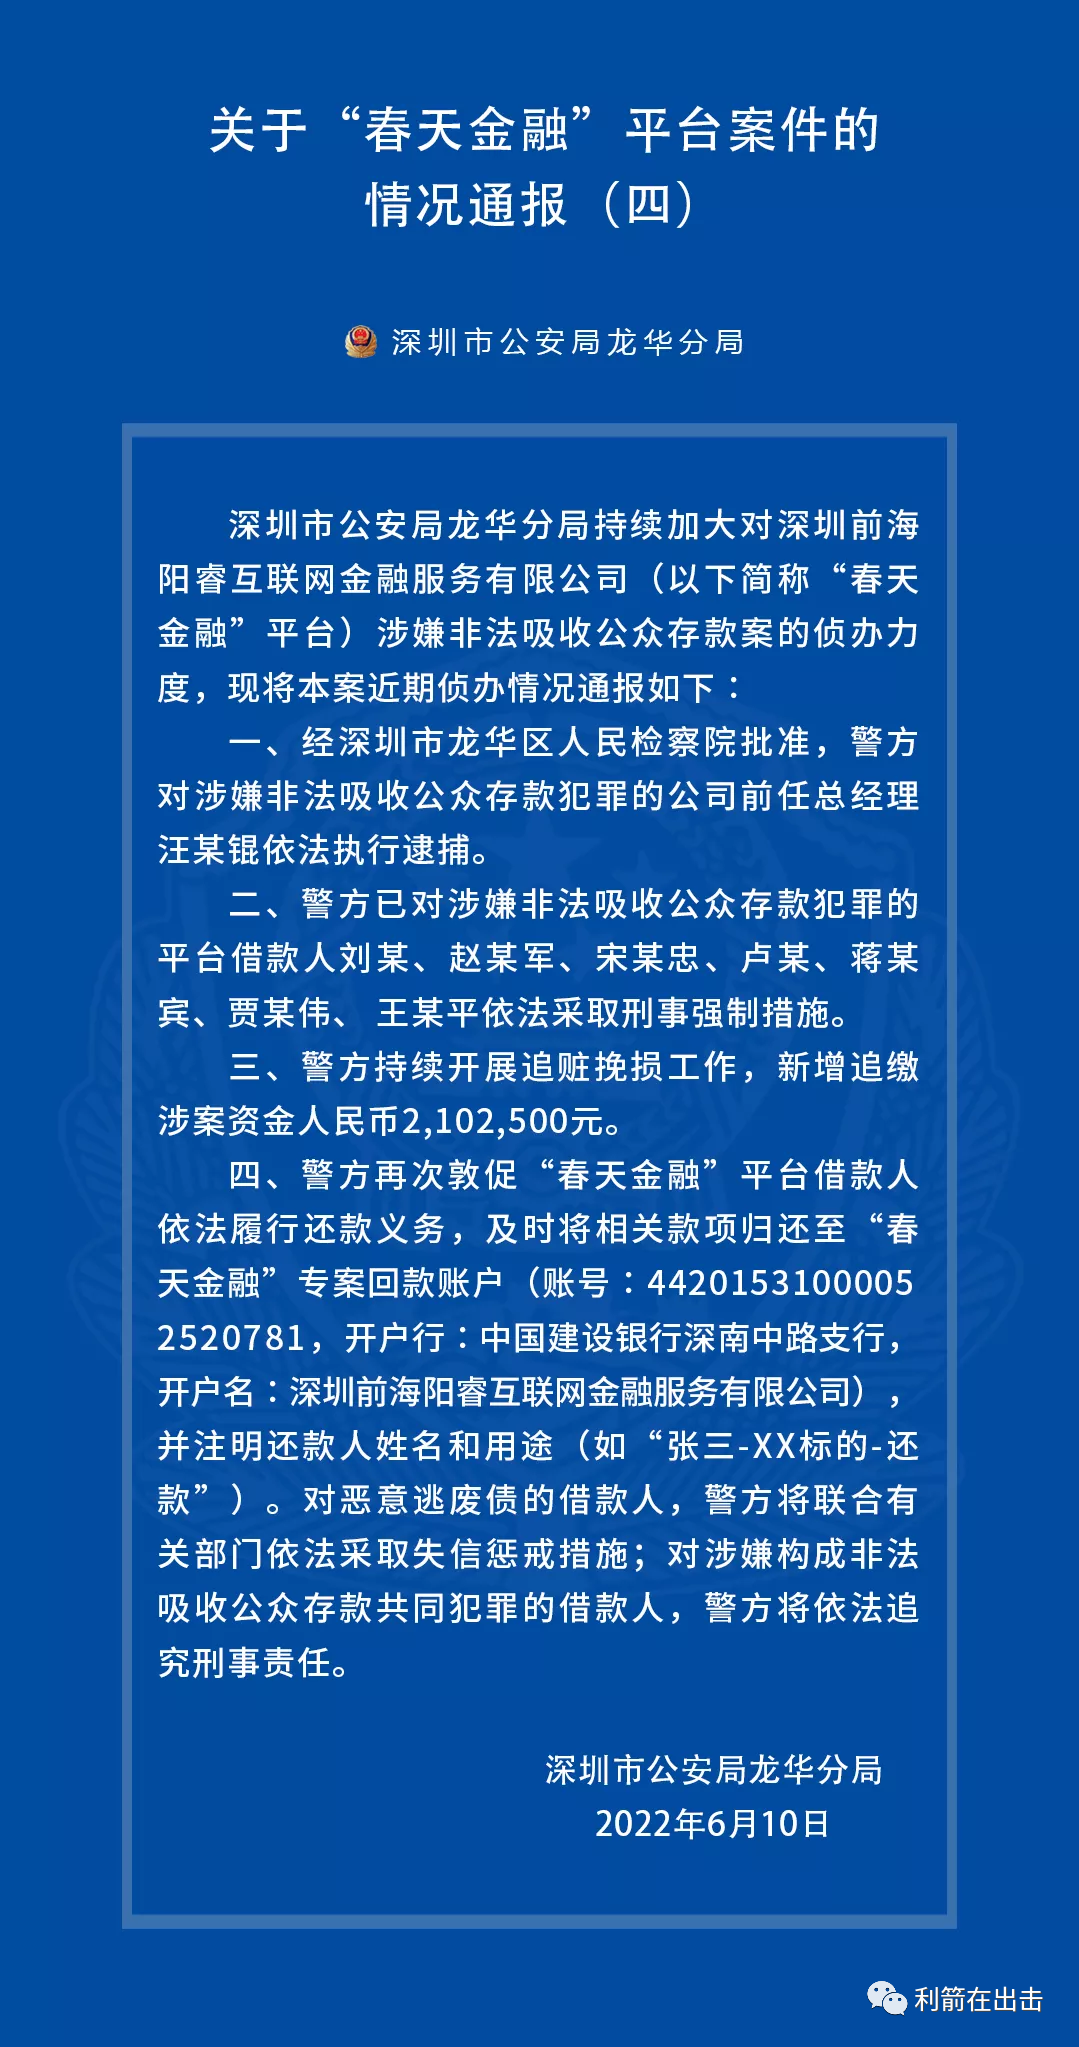 深圳“春天金融”非吸案第四期通报来啦，新增追缴涉案资金210.25万元…